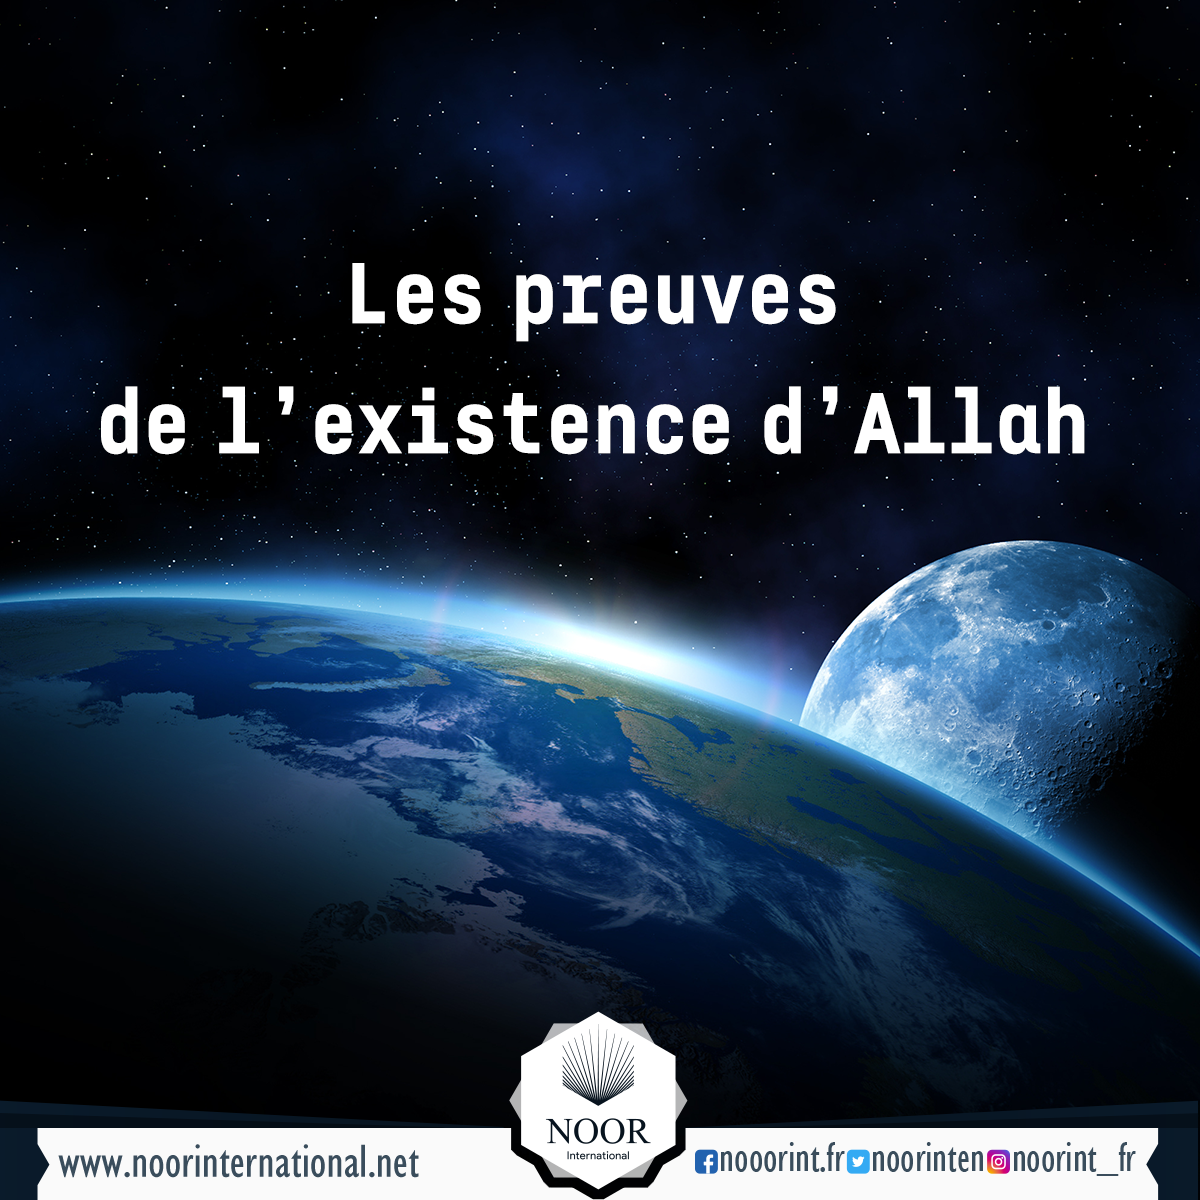 Les preuves de l’existence d’Allah